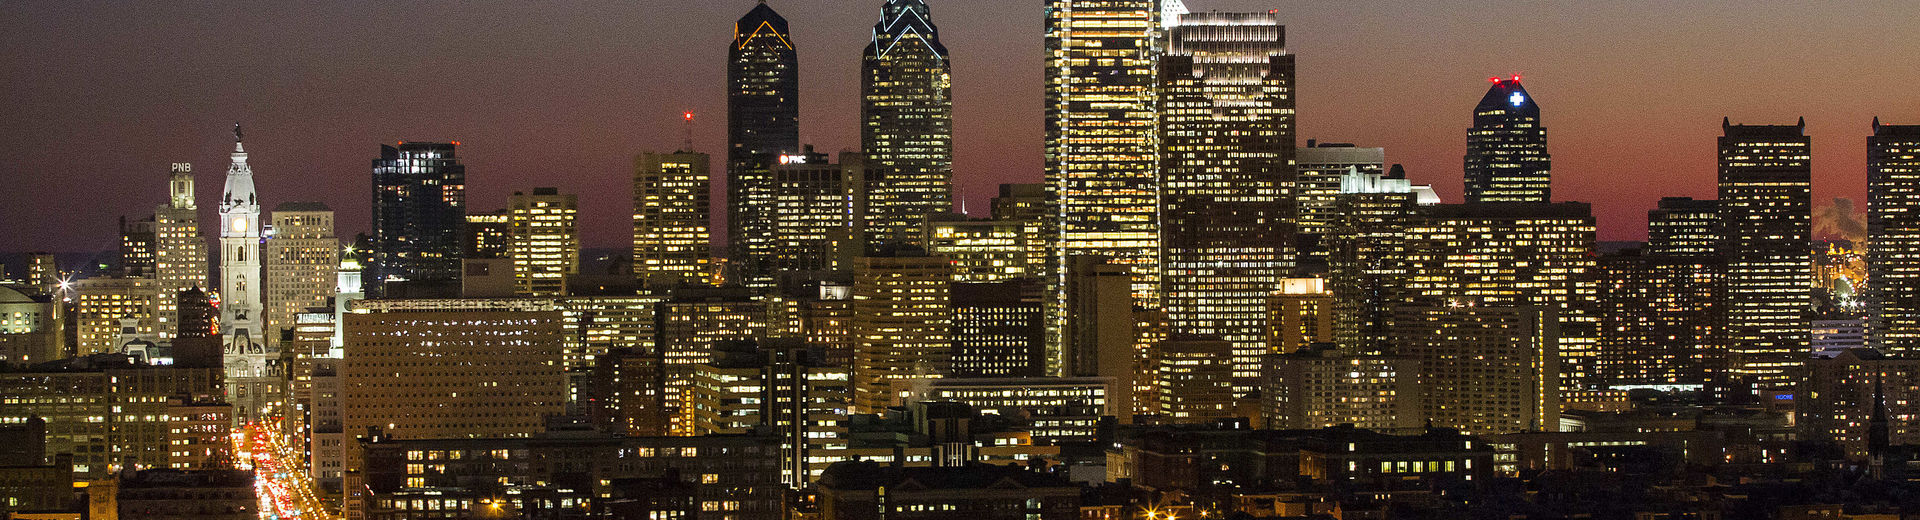 The Philadelphia center city skyline at dusk.